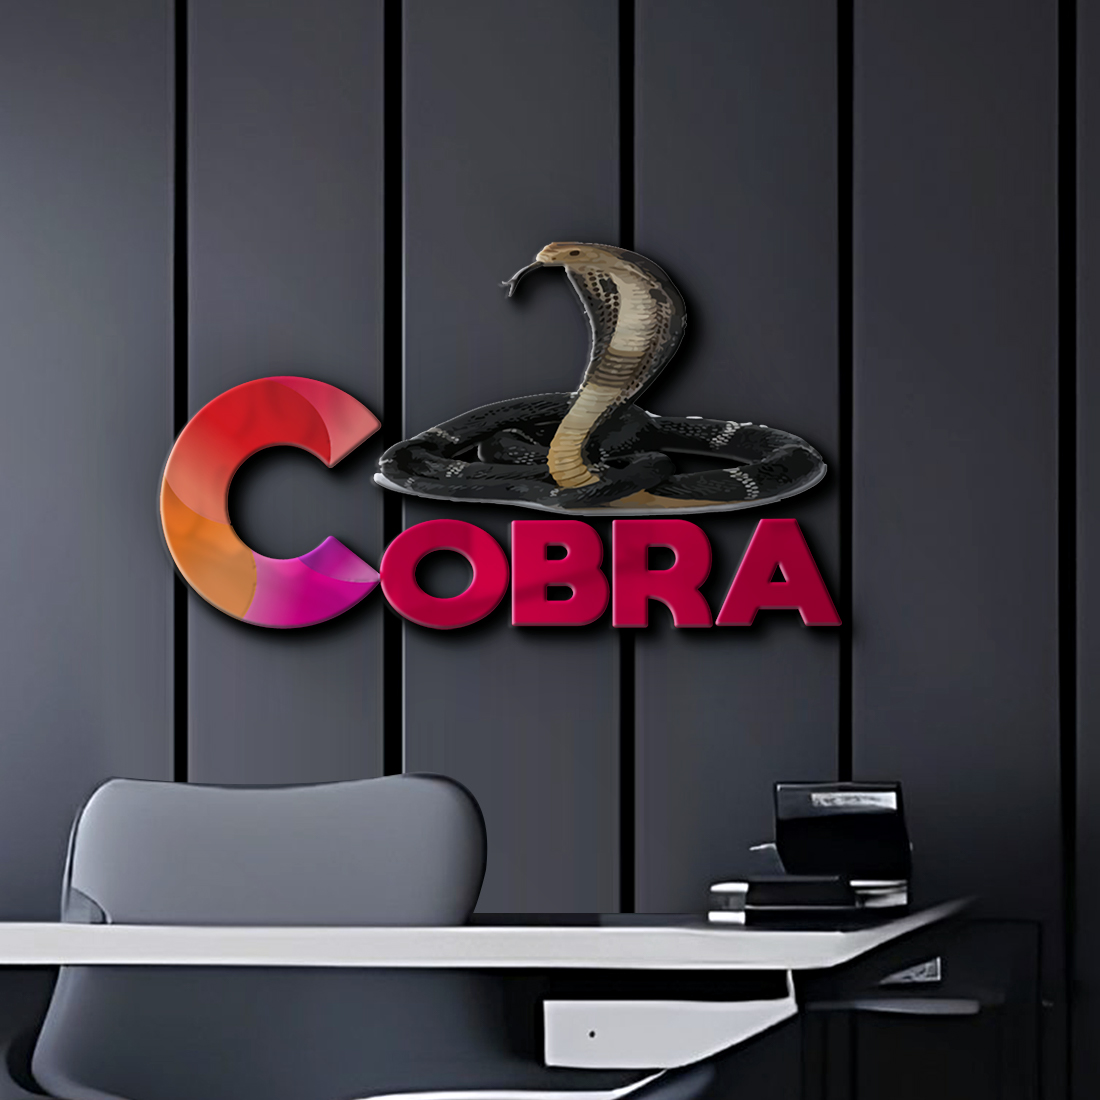 cobra preview image.